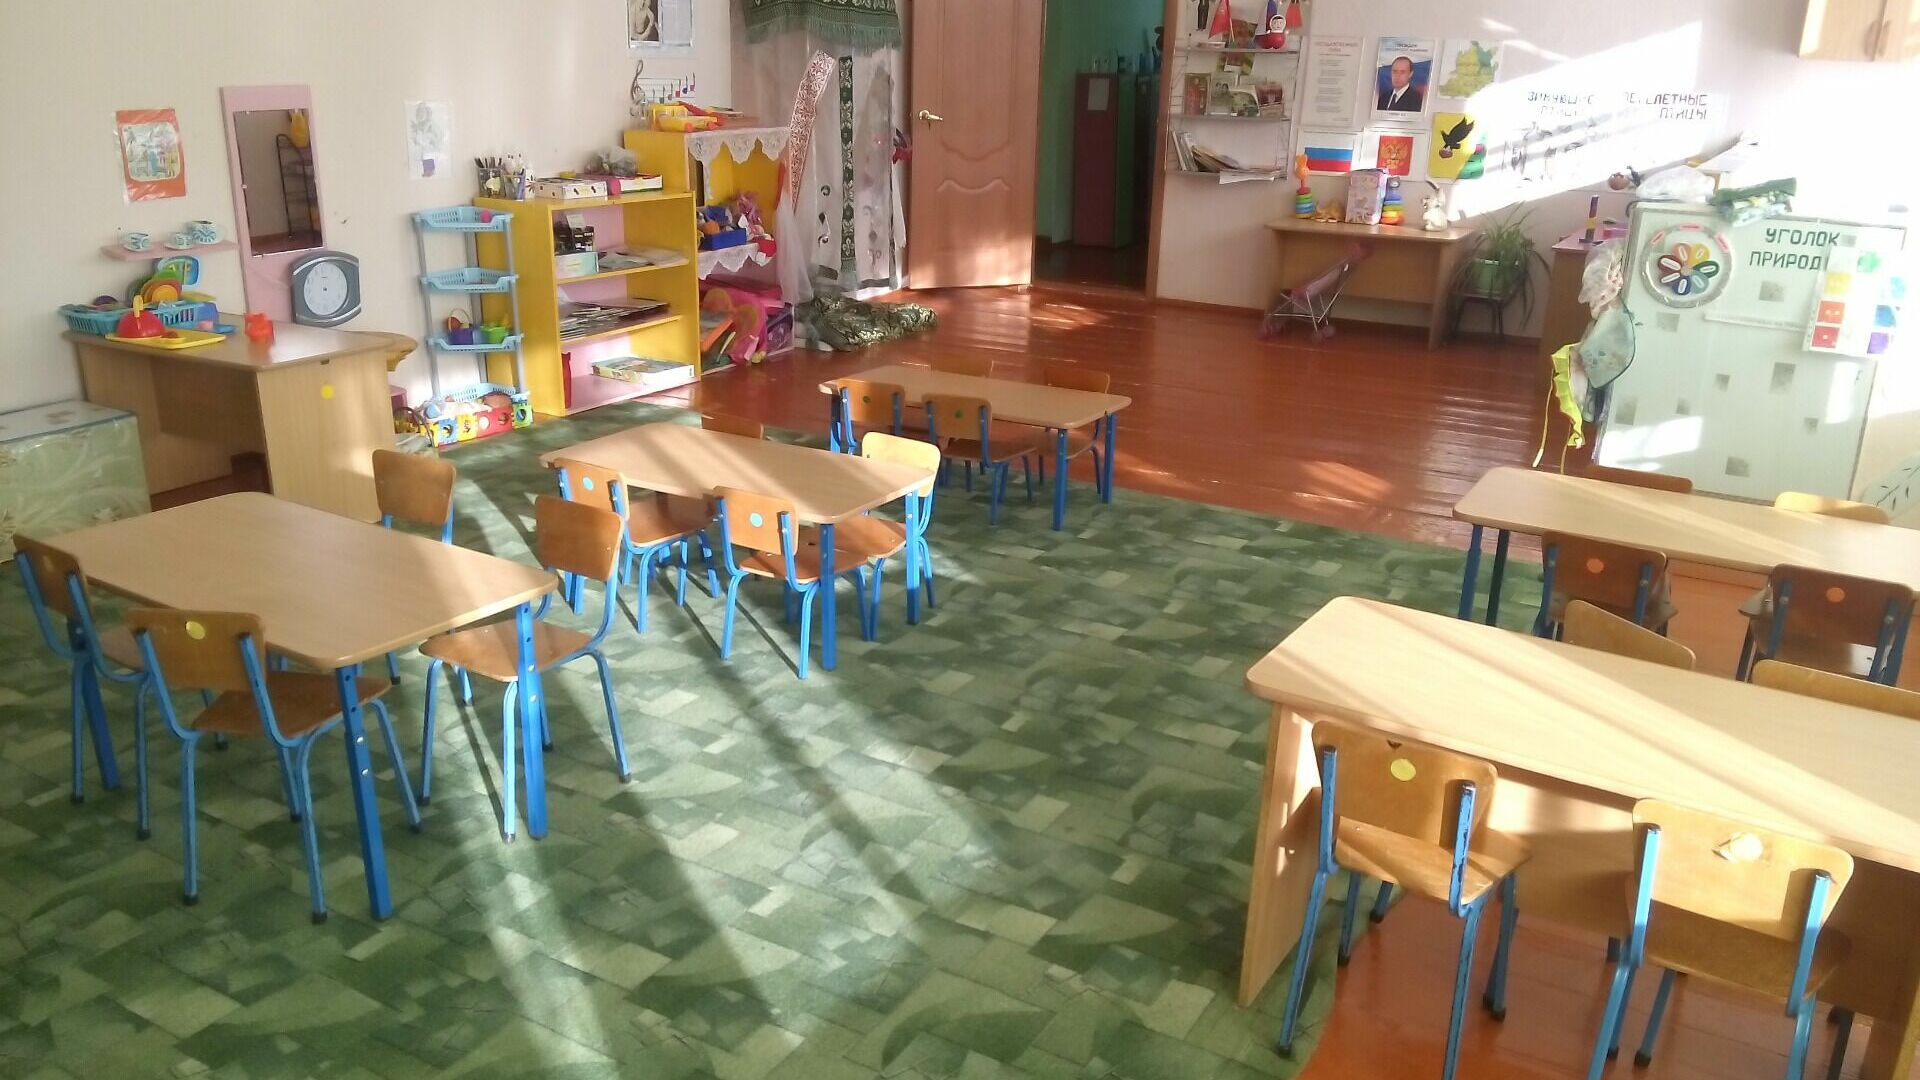 Санитарные нормы не соблюдаются в 95% детских садов Челябинской области